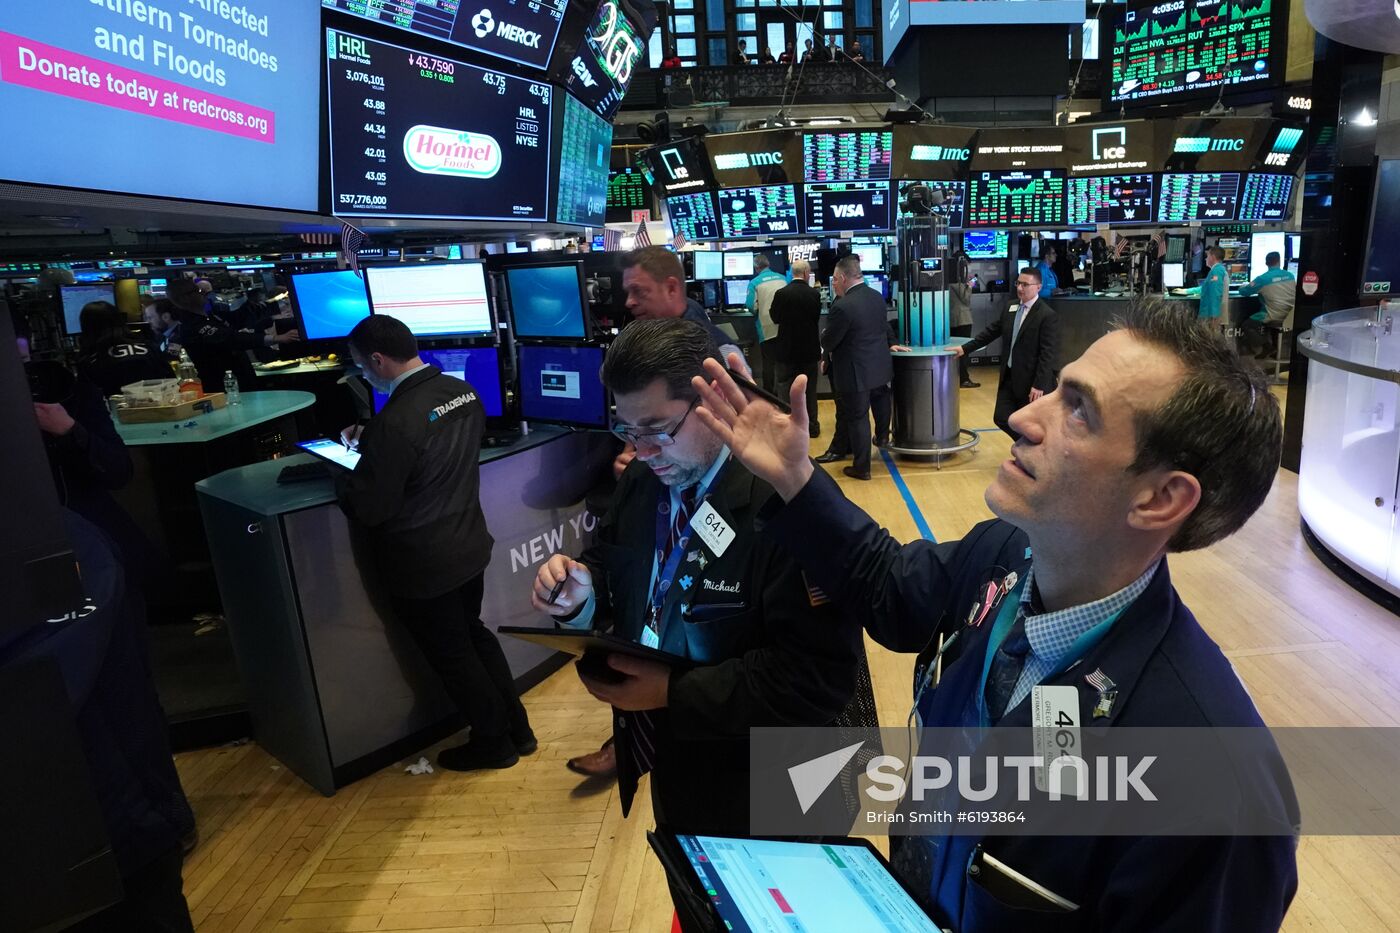 US New York Stock Exchange